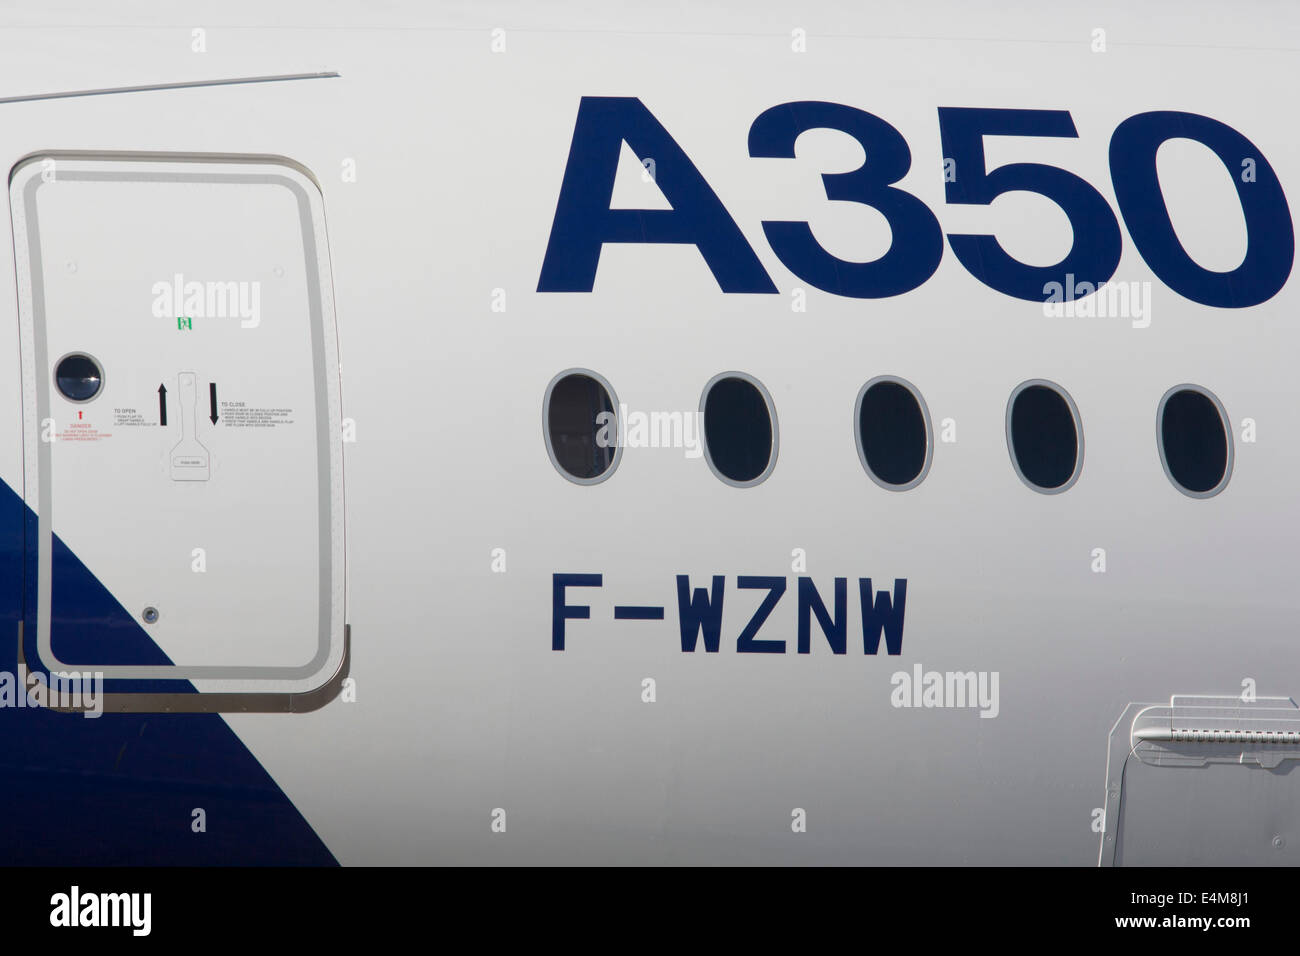 Detail des Airbus A350 XWB auf der Farnborough Air Show, England. Die A350 XWB wird nur neue Flugzeuge in der Kategorie 300-400 sitzen. Die A350 XWB ist eine Familie von Langstrecken, zweistrahlige Großraumflugzeug Jet Airliner von europäischen Flugzeughersteller Airbus entwickelt. Die A350 ist der erste Airbus mit Rumpf und Flügel Strukturen besteht hauptsächlich aus Kohlenstoff-Faser-verstärktem Polymer. Es ist geplant, kommerziellen Dienst später 2014 treten. Stockfoto